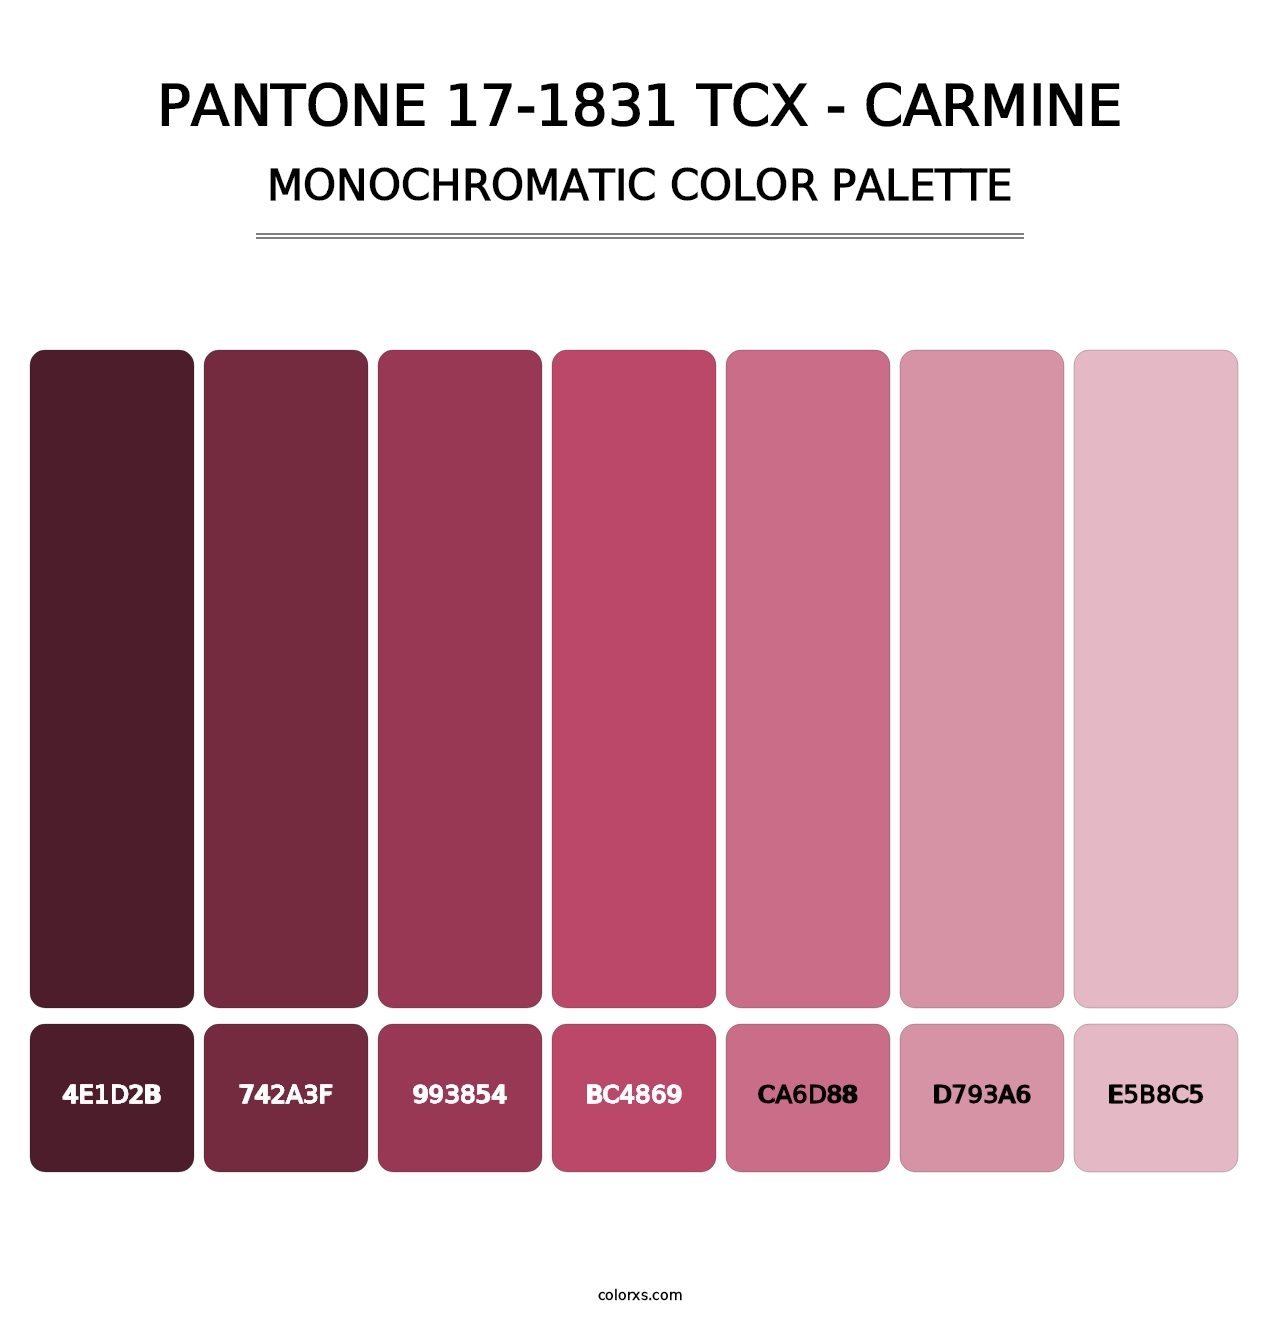 PANTONE 17-1831 TCX - Carmine - Monochromatic Color Palette